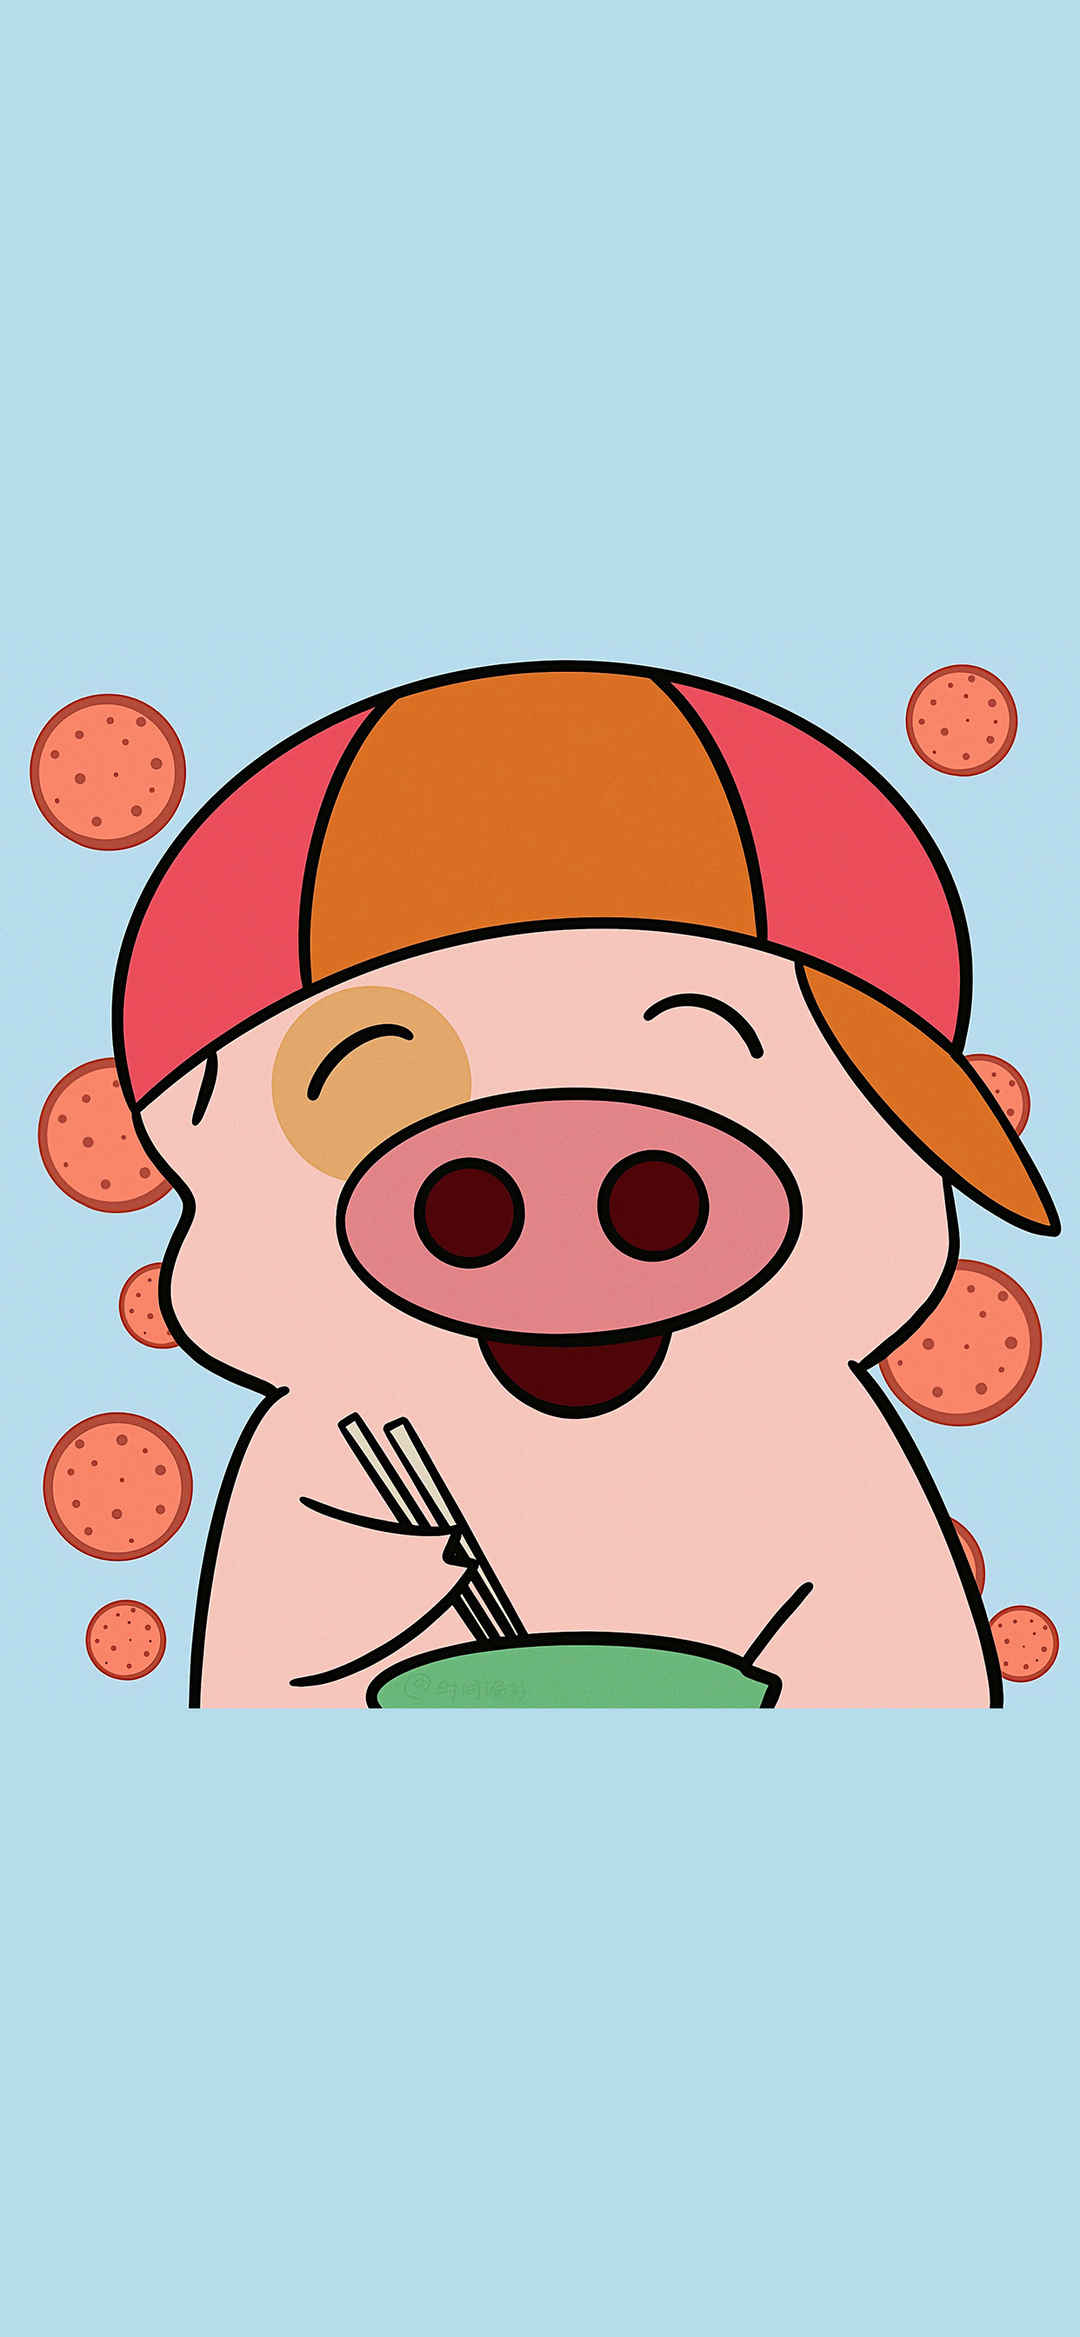 可爱卡通小猪插画手机壁纸-